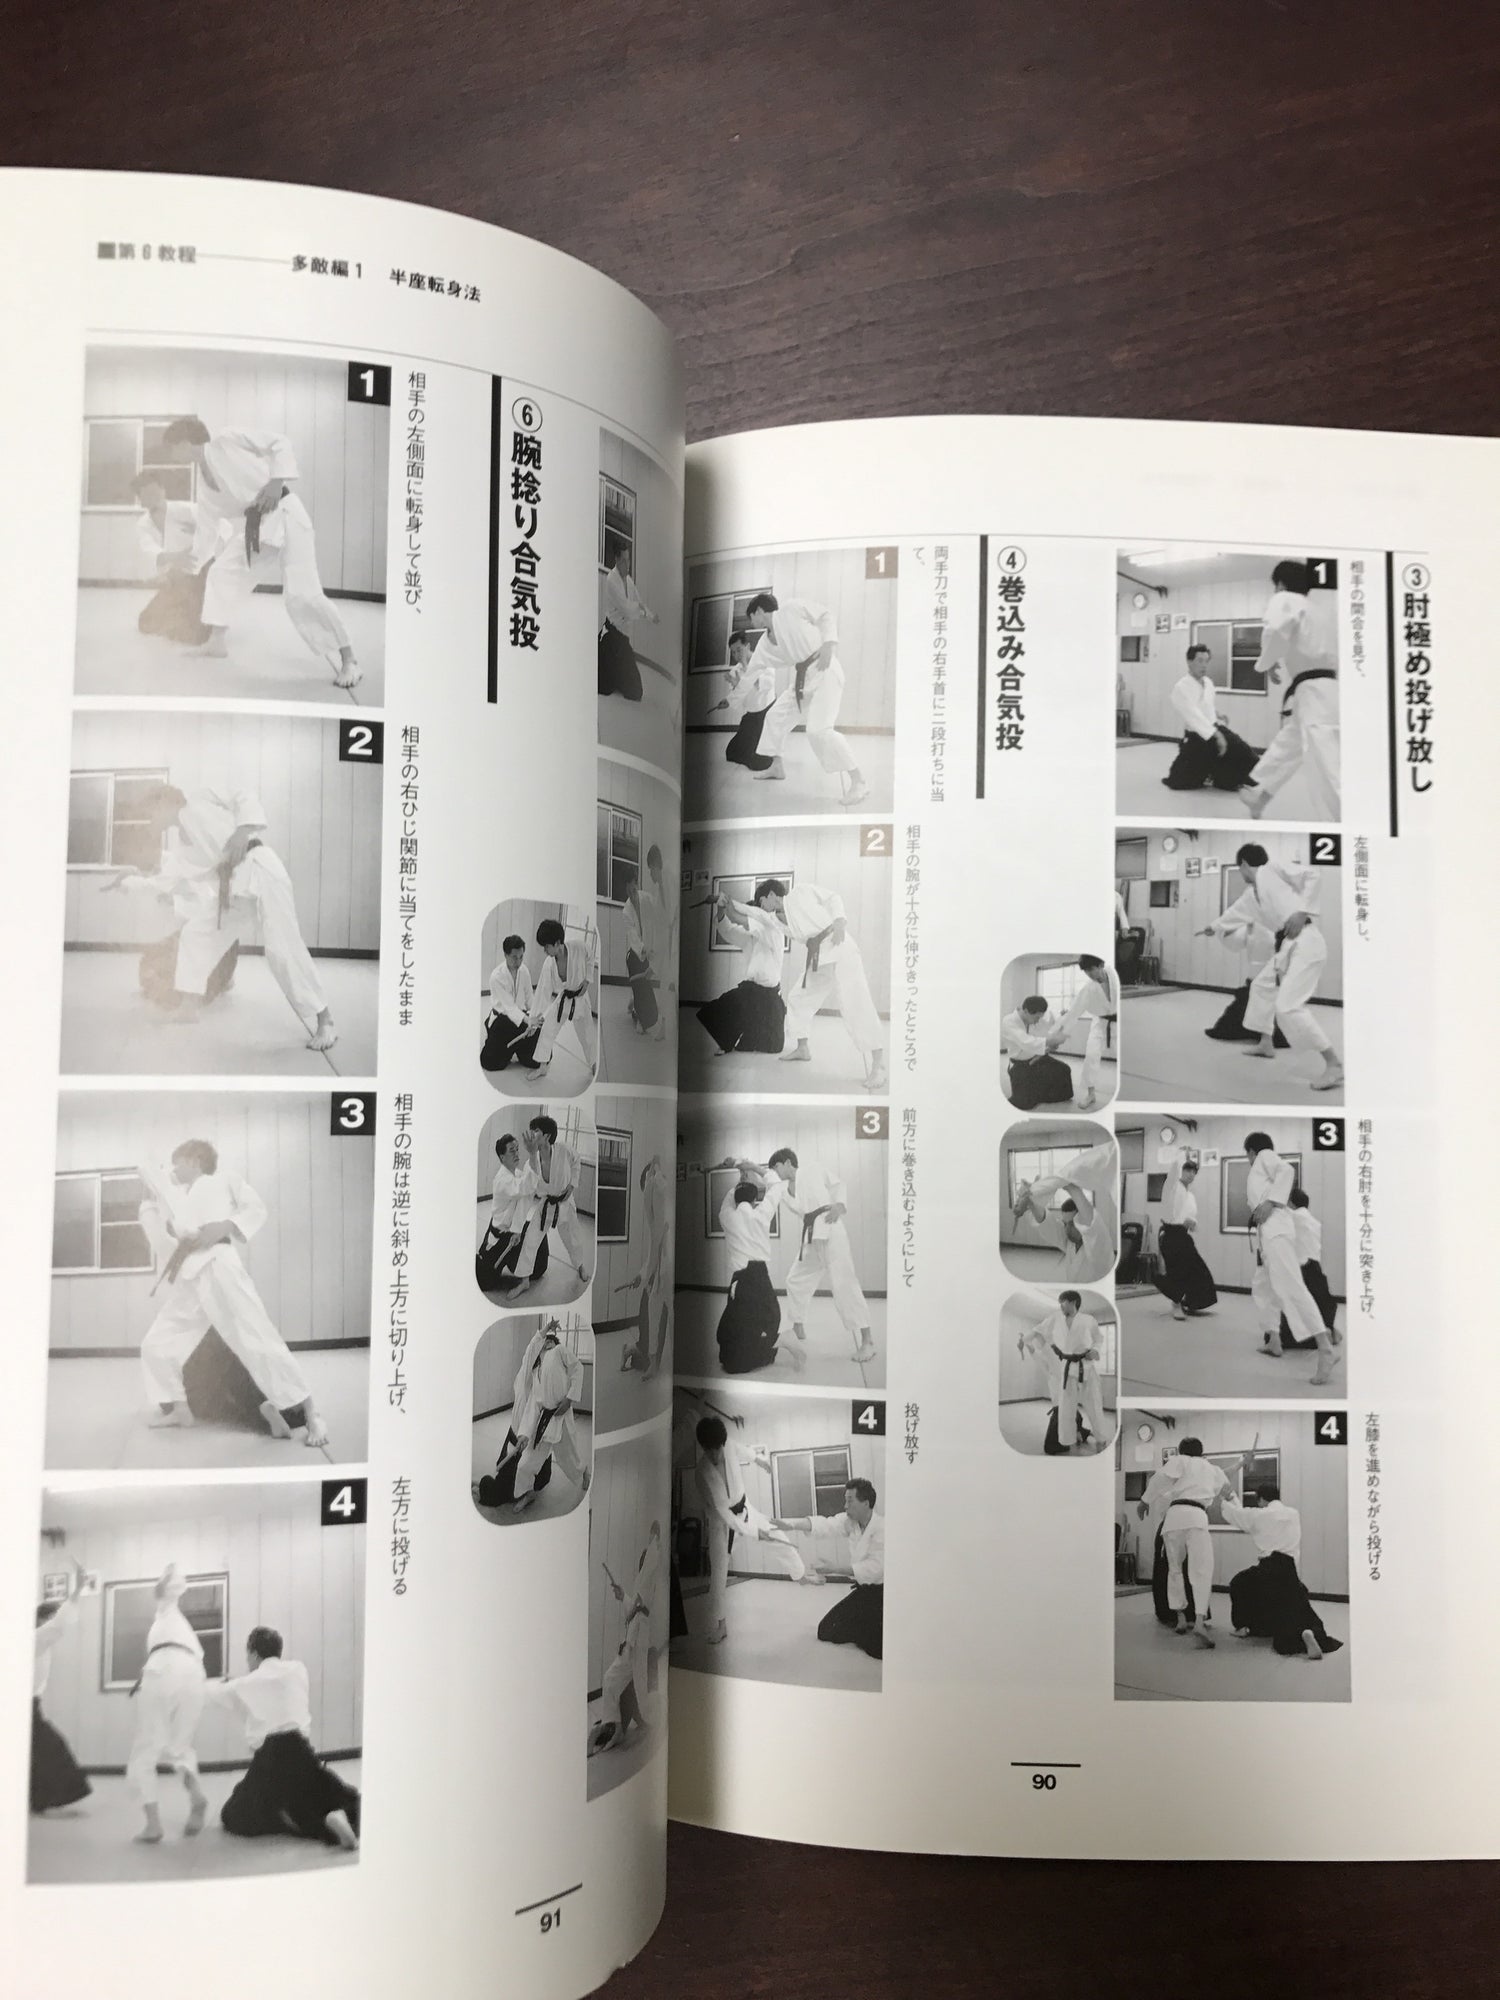 Nihonden Daito Ryu Aikijujutsu Book 3: Aiki no Jutsu by Kogen Sugasawa (Preowned) - Budovideos Inc